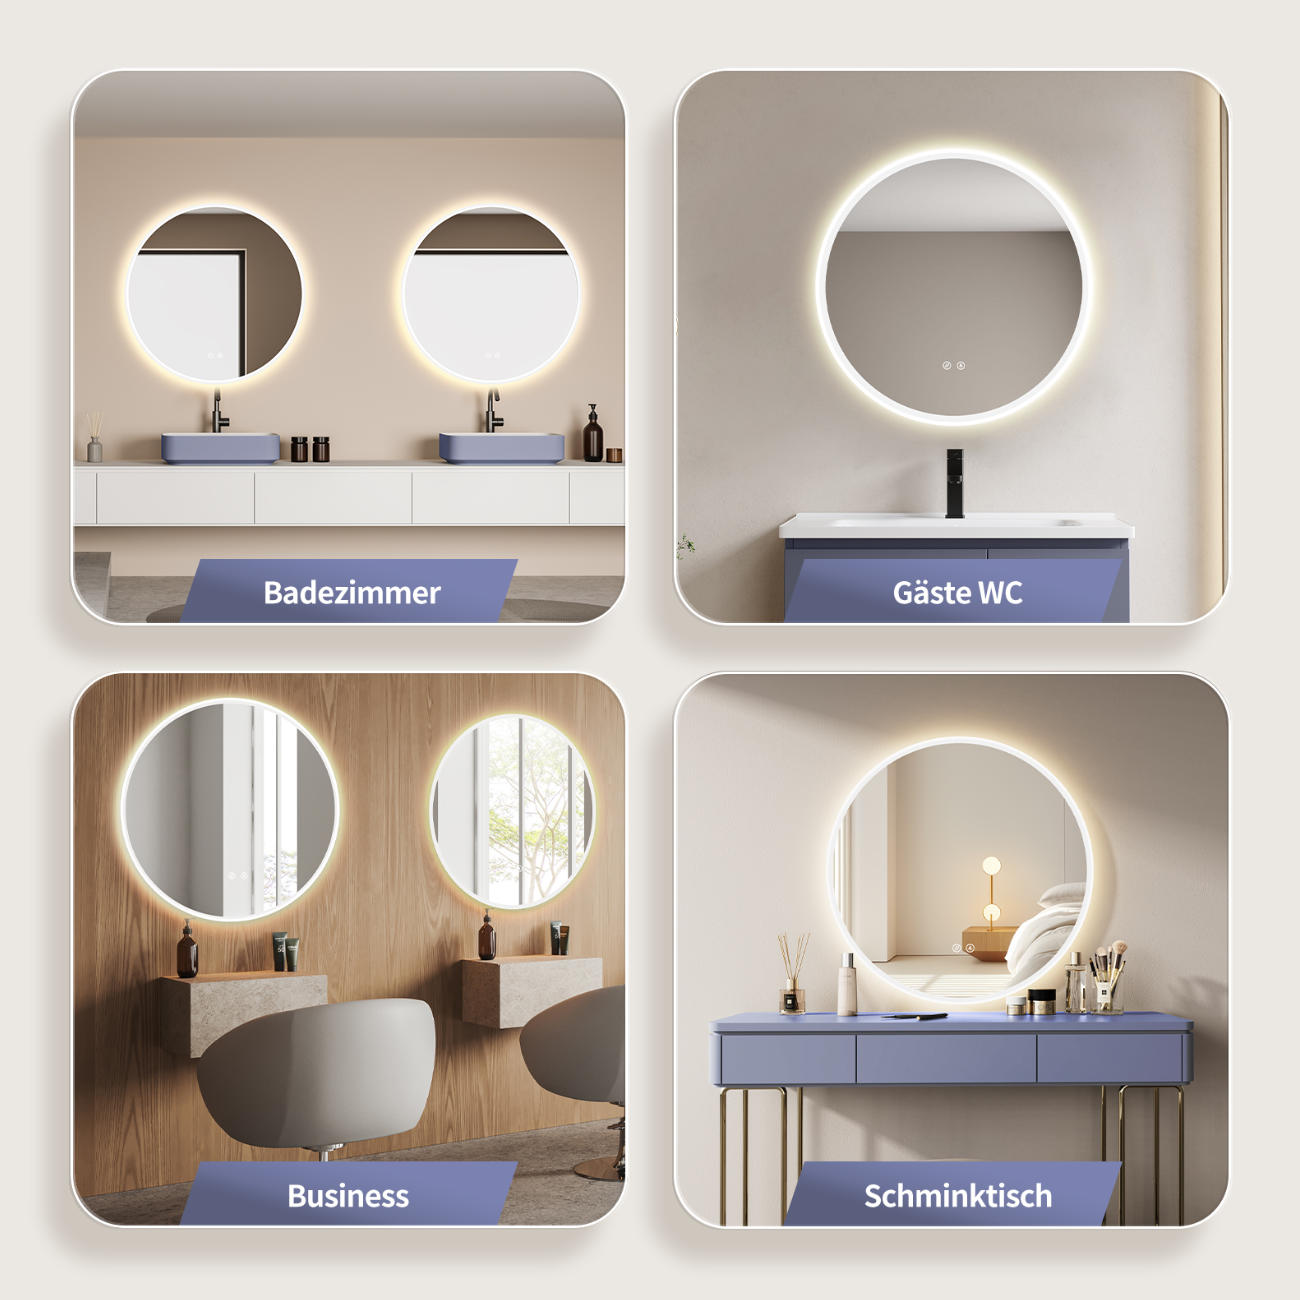 LED Badspiegel: Lichtwechsel, runder Design-Spiegel, Antibeschlag-Funktion, Weiß-Metallrahmen